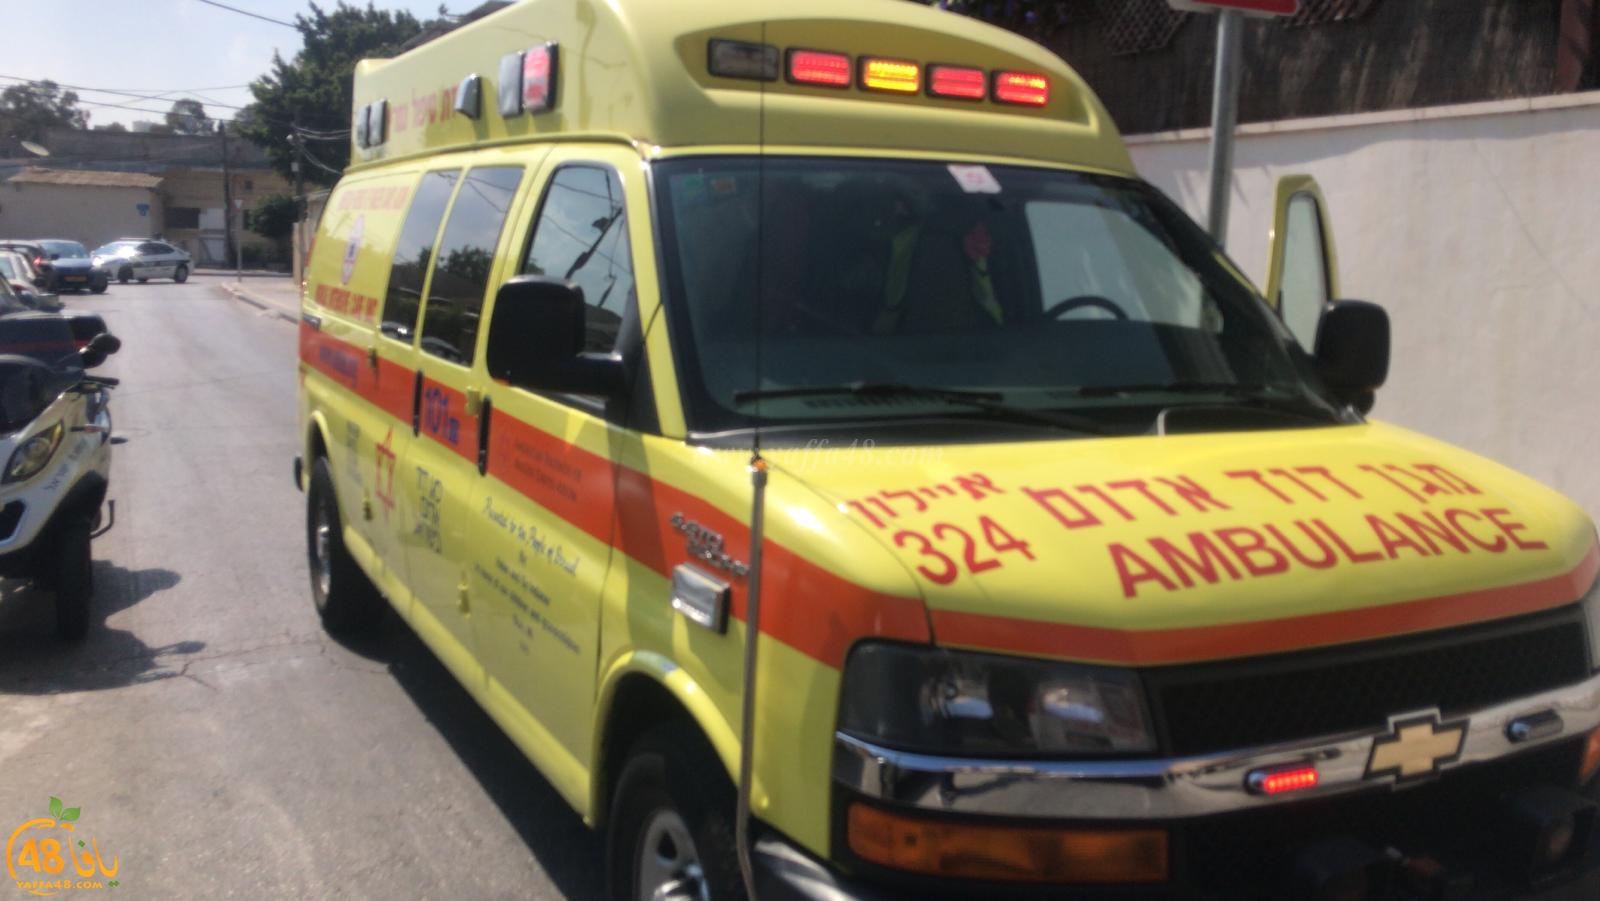  يافا: إصابة خطرة لشخص اثر سقوطه من علو بالمدينة 